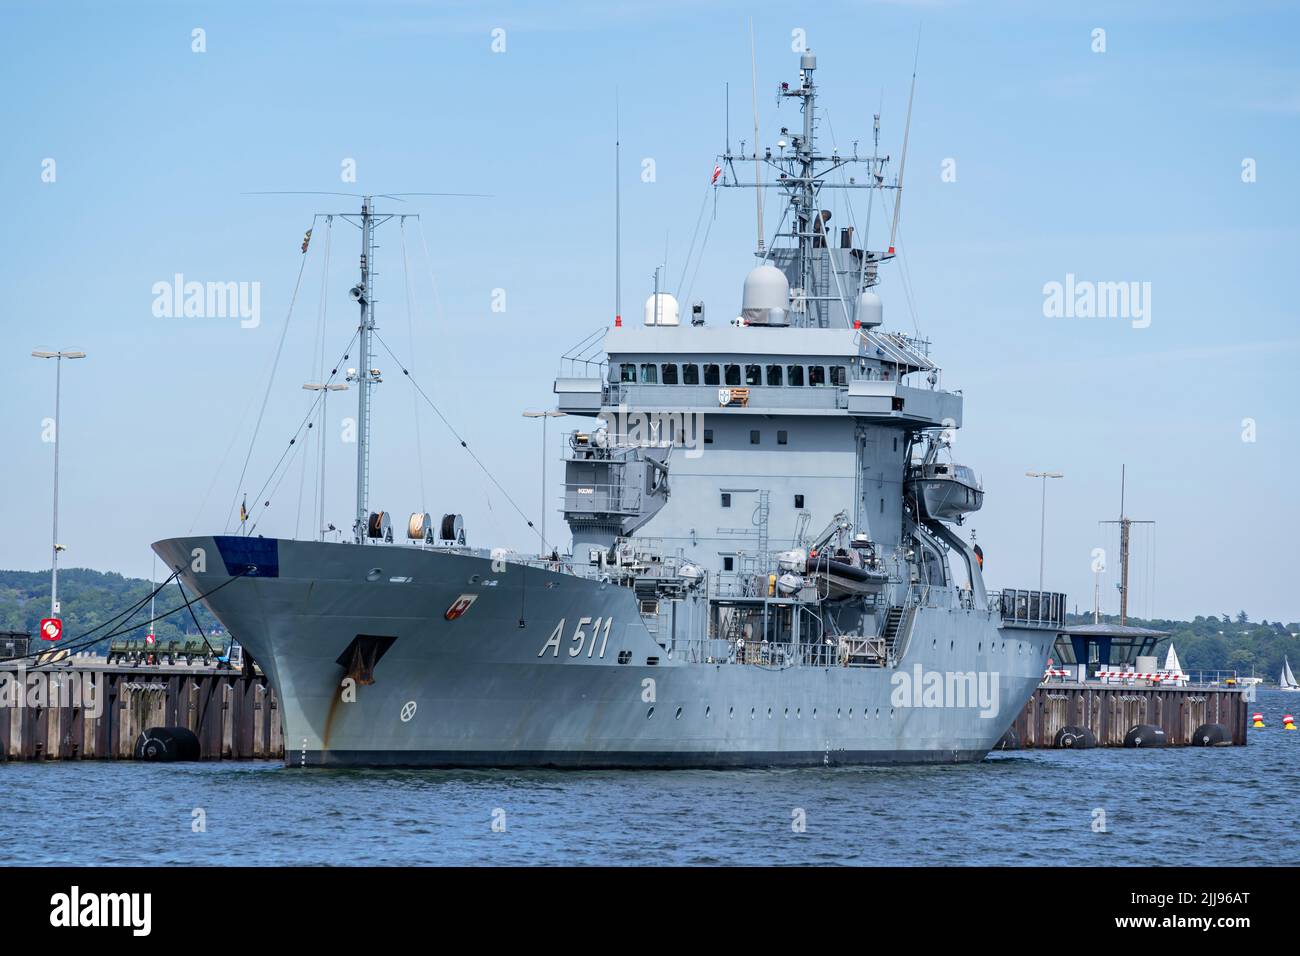 Barco de reabastecimiento de la Armada Alemana ELBE A511 en el puerto de Kiel Foto de stock